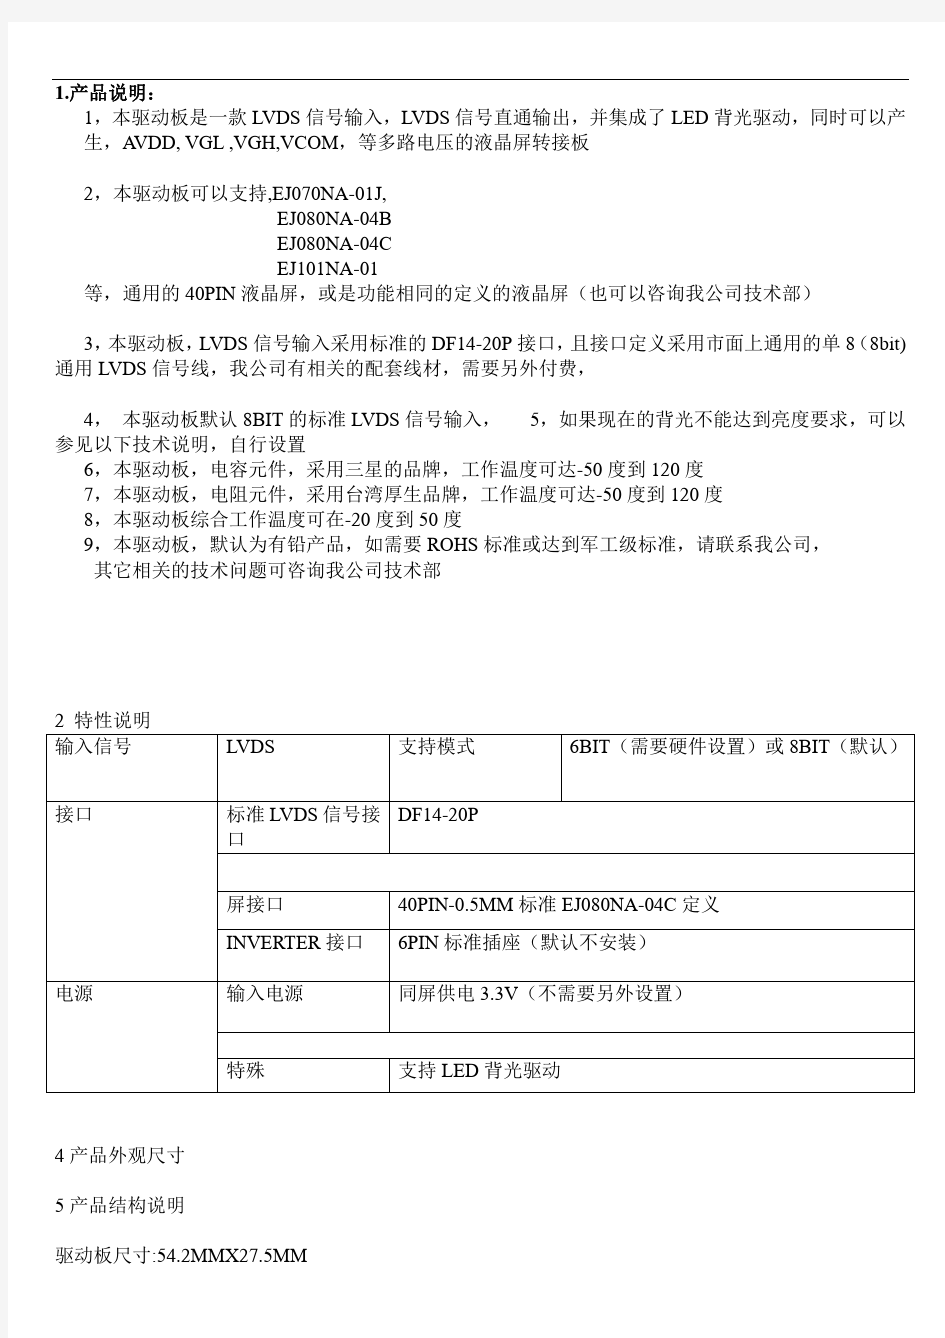 奇晶飞升PCB800182产品中文规格书